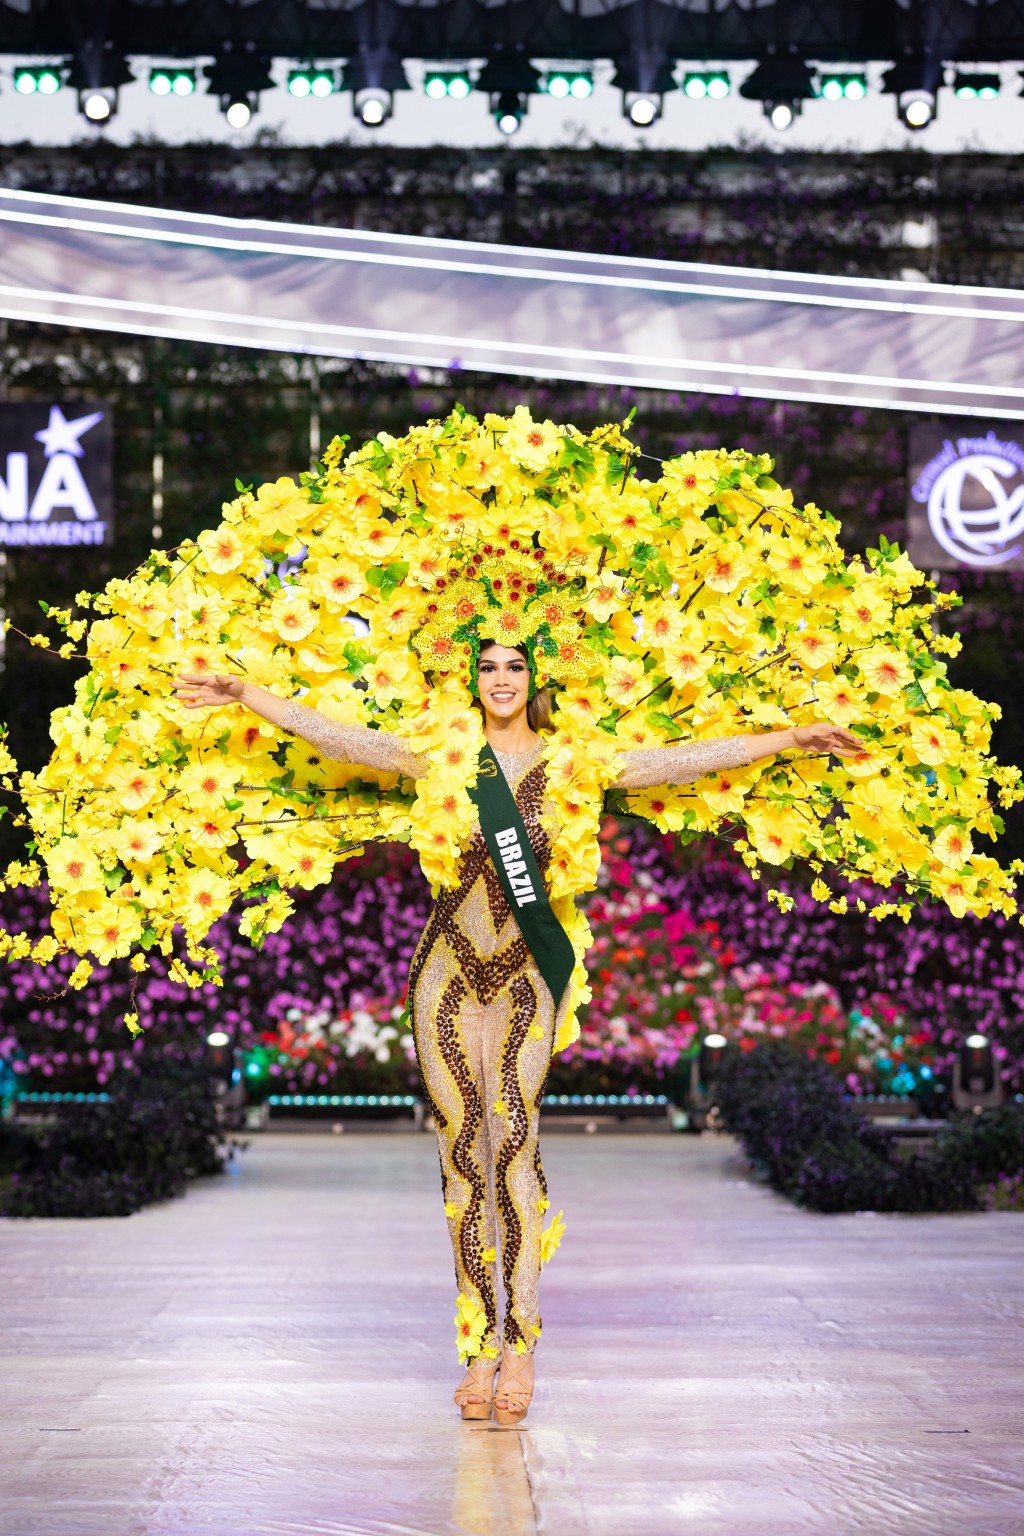 Bán kết Miss Earth 2023 với những màn trình diễn bùng nổ